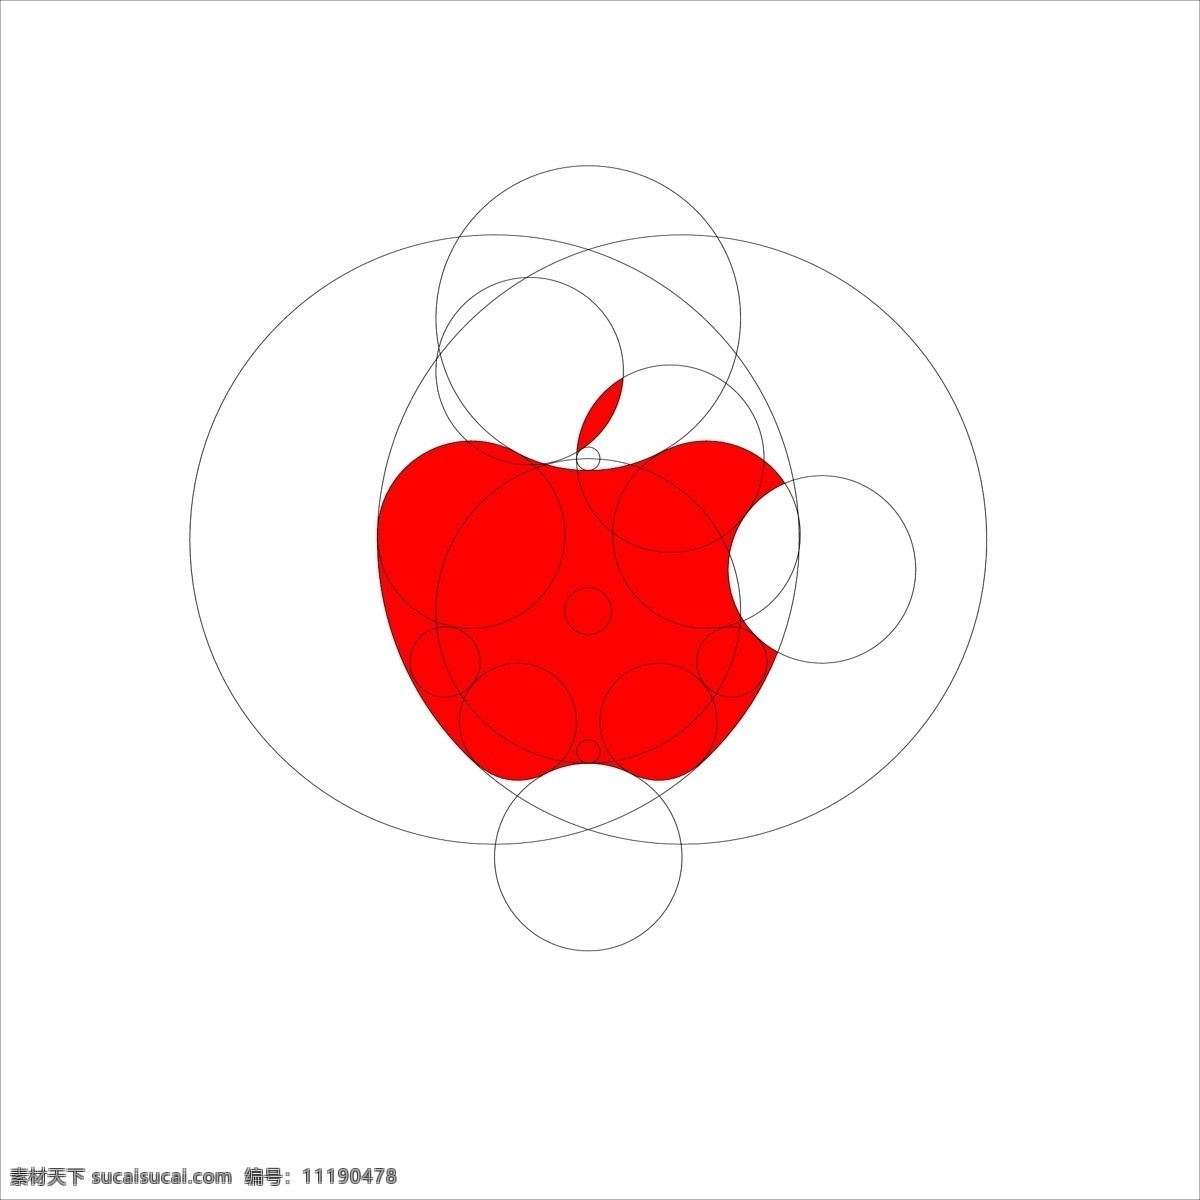 苹果 logo 绘制 苹果logo 苹果绘制 ui设计 logo设计